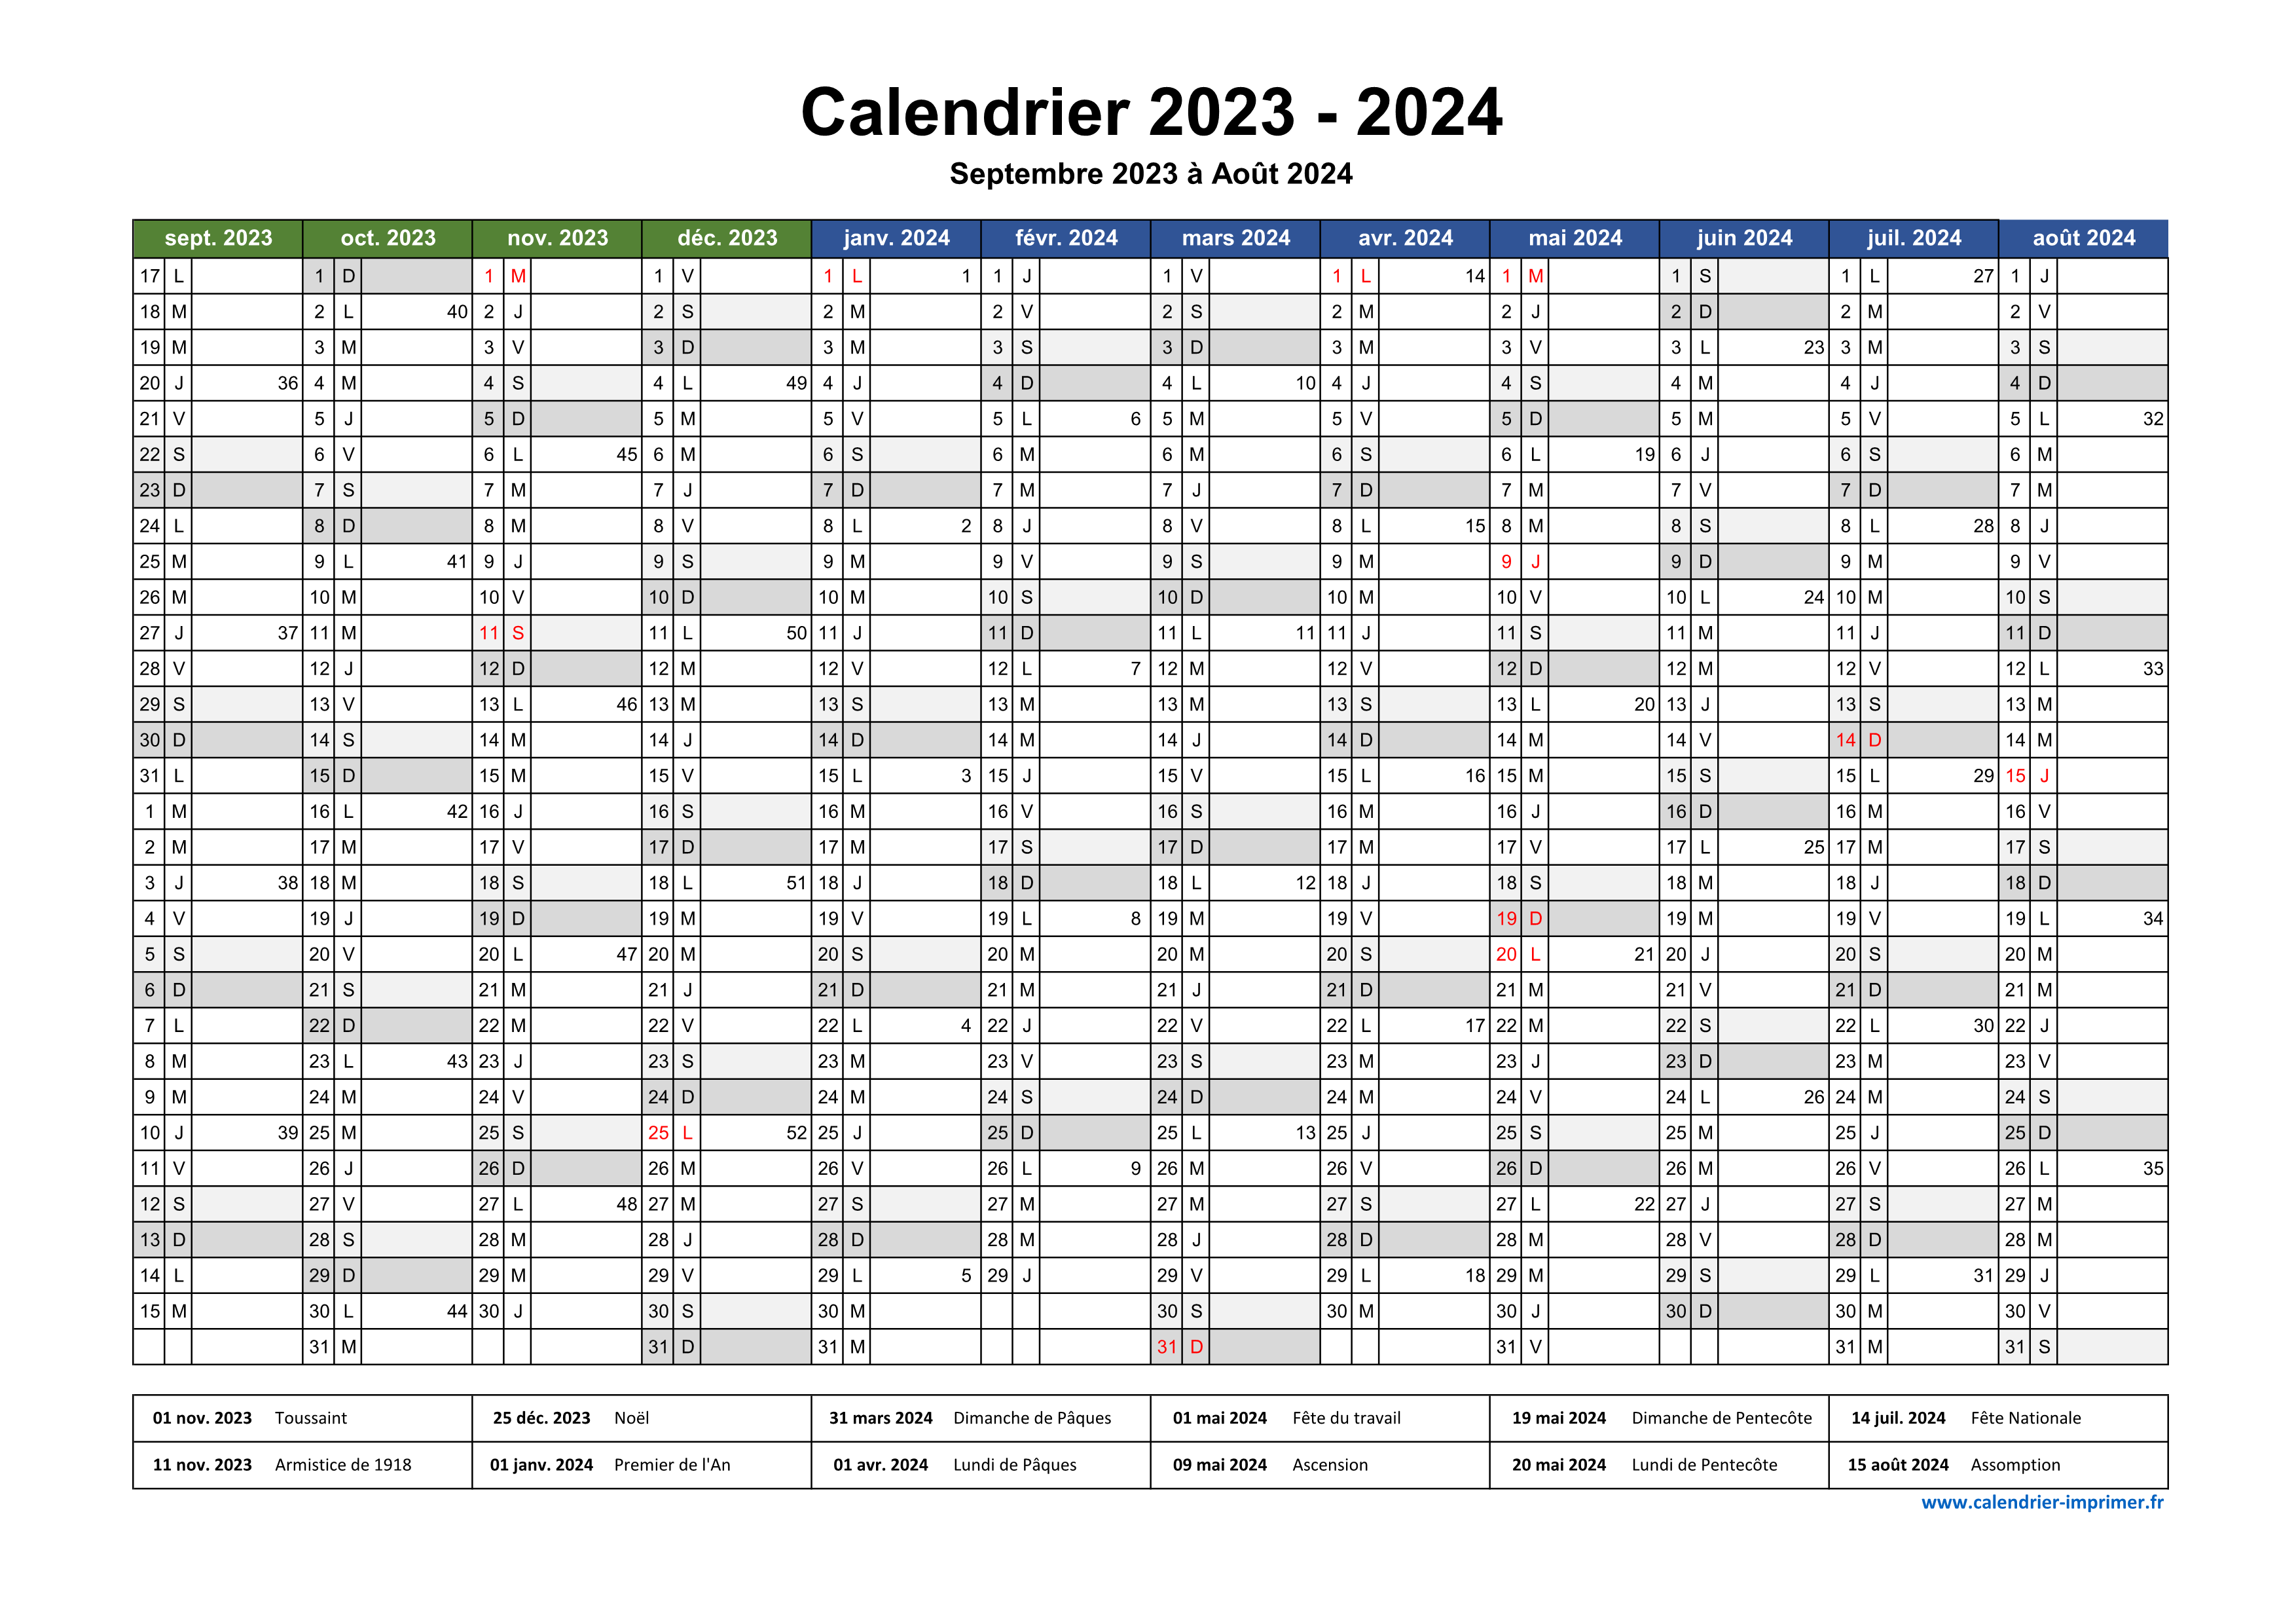 Calendrier 2023-2024 : du lourd d'entrée pour le SUA 